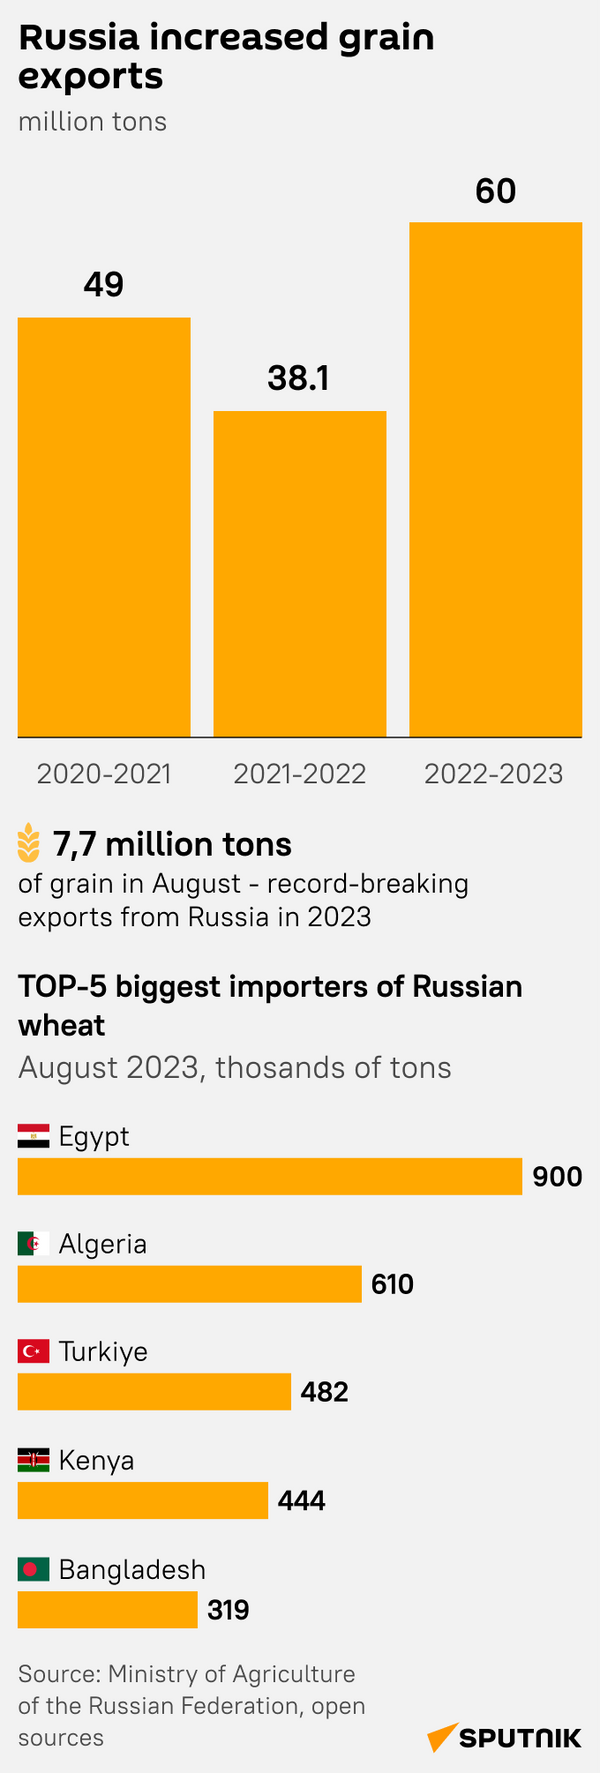 Russian grain increased export mob - Sputnik International